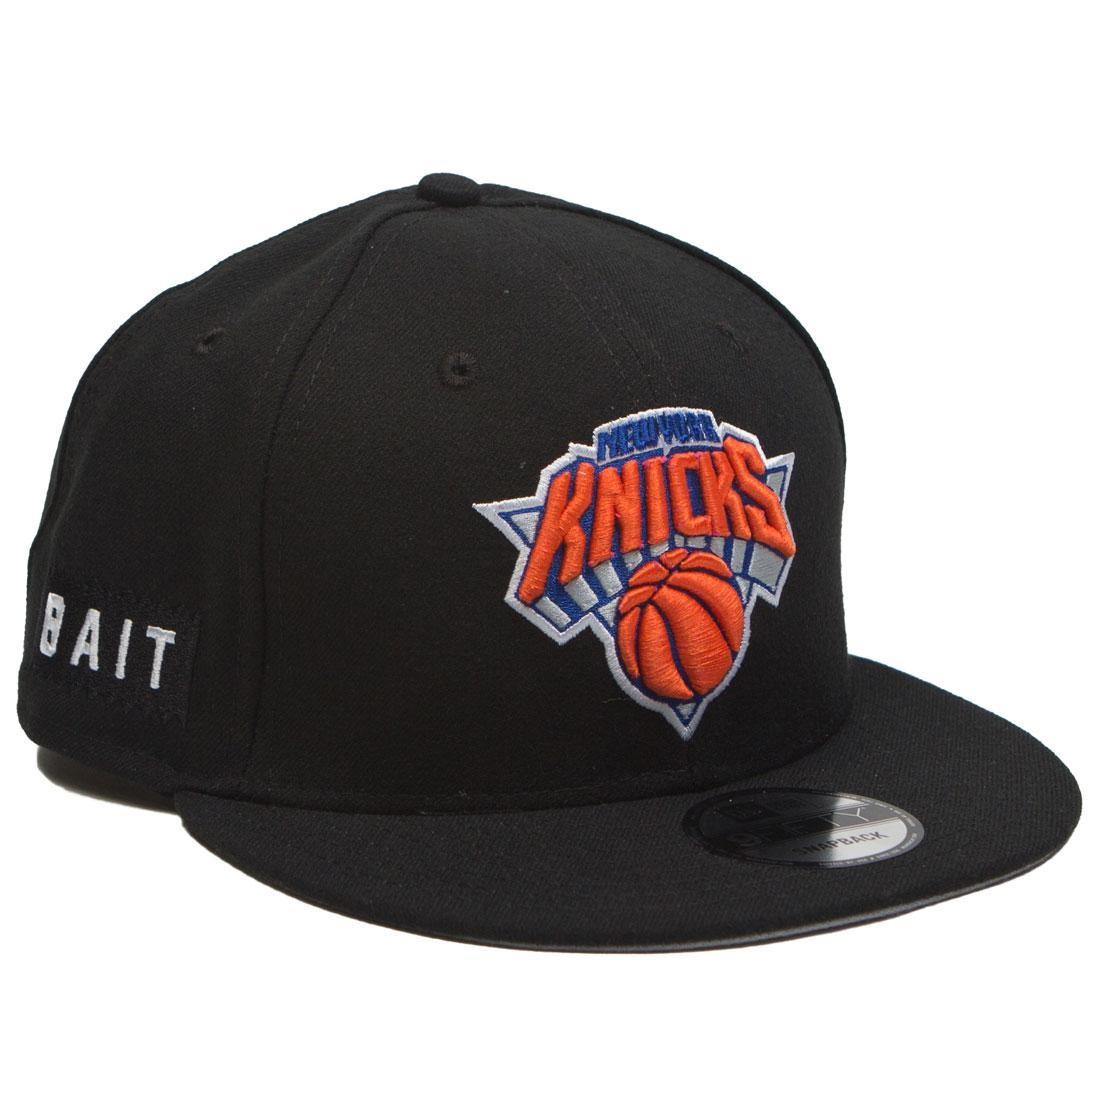 BAIT x NBA X New Era 9Fifty New York Knicks OTC Snapback Cap (black)